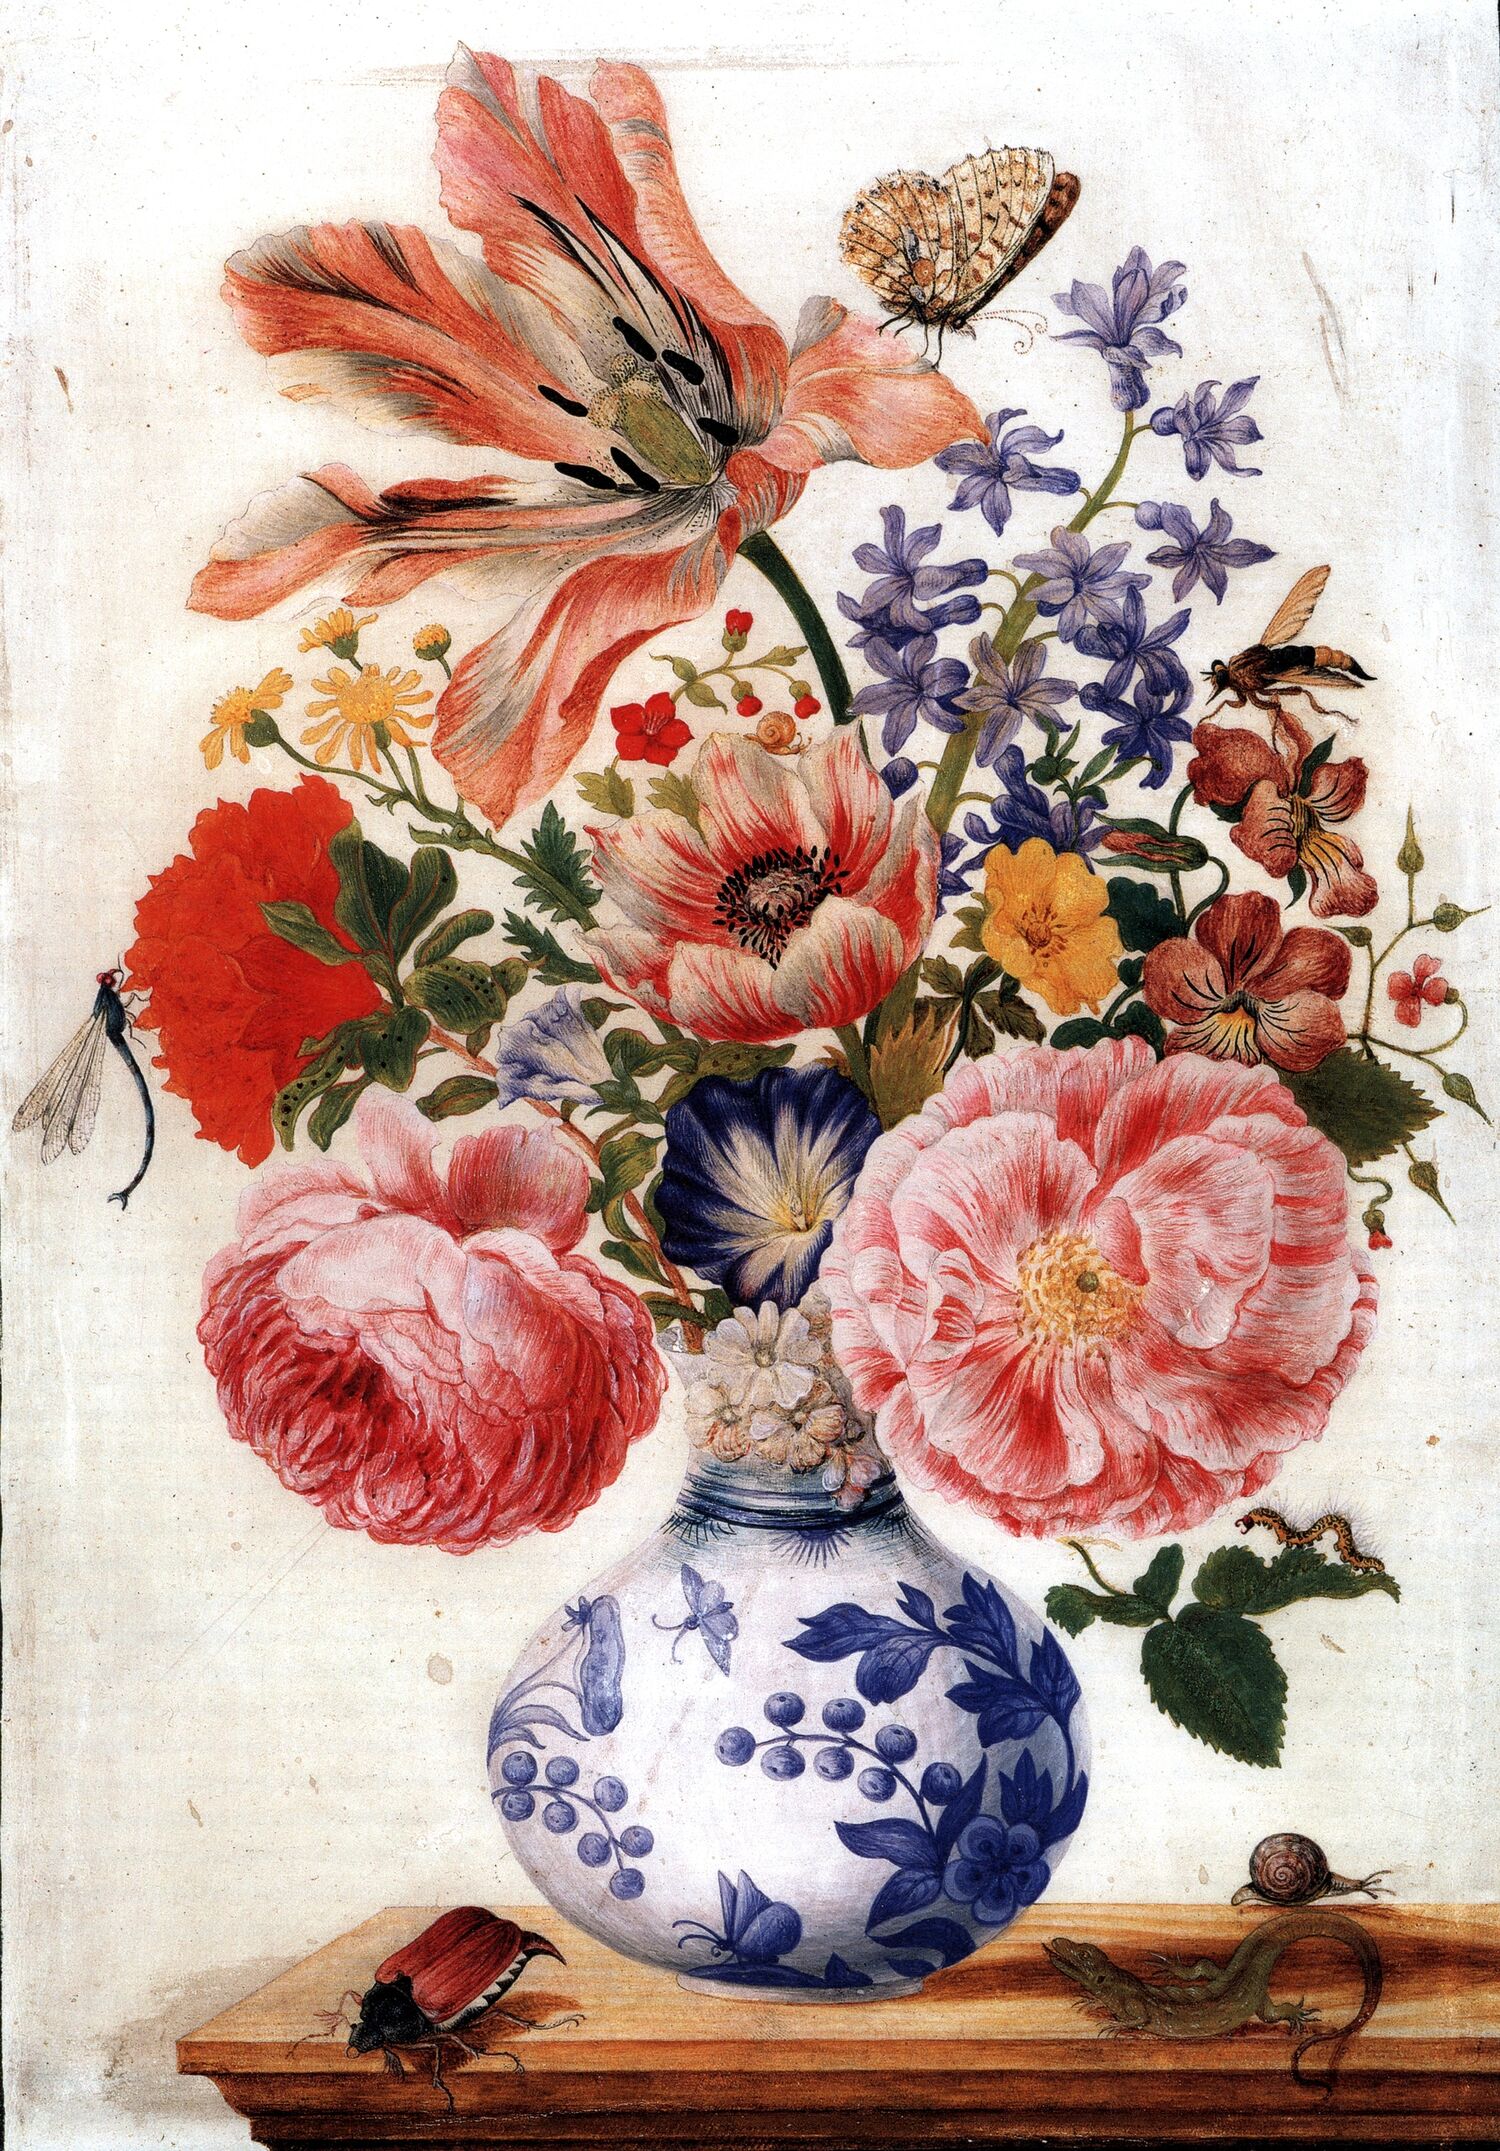 Darstellung einer chinesischen Vase mit Rosen von Maria Sibylla Merian, um 1670 - 1680, Mohn und Nelken, Kupferstichkabinett Berlin, SMB, PD-old-70-expired